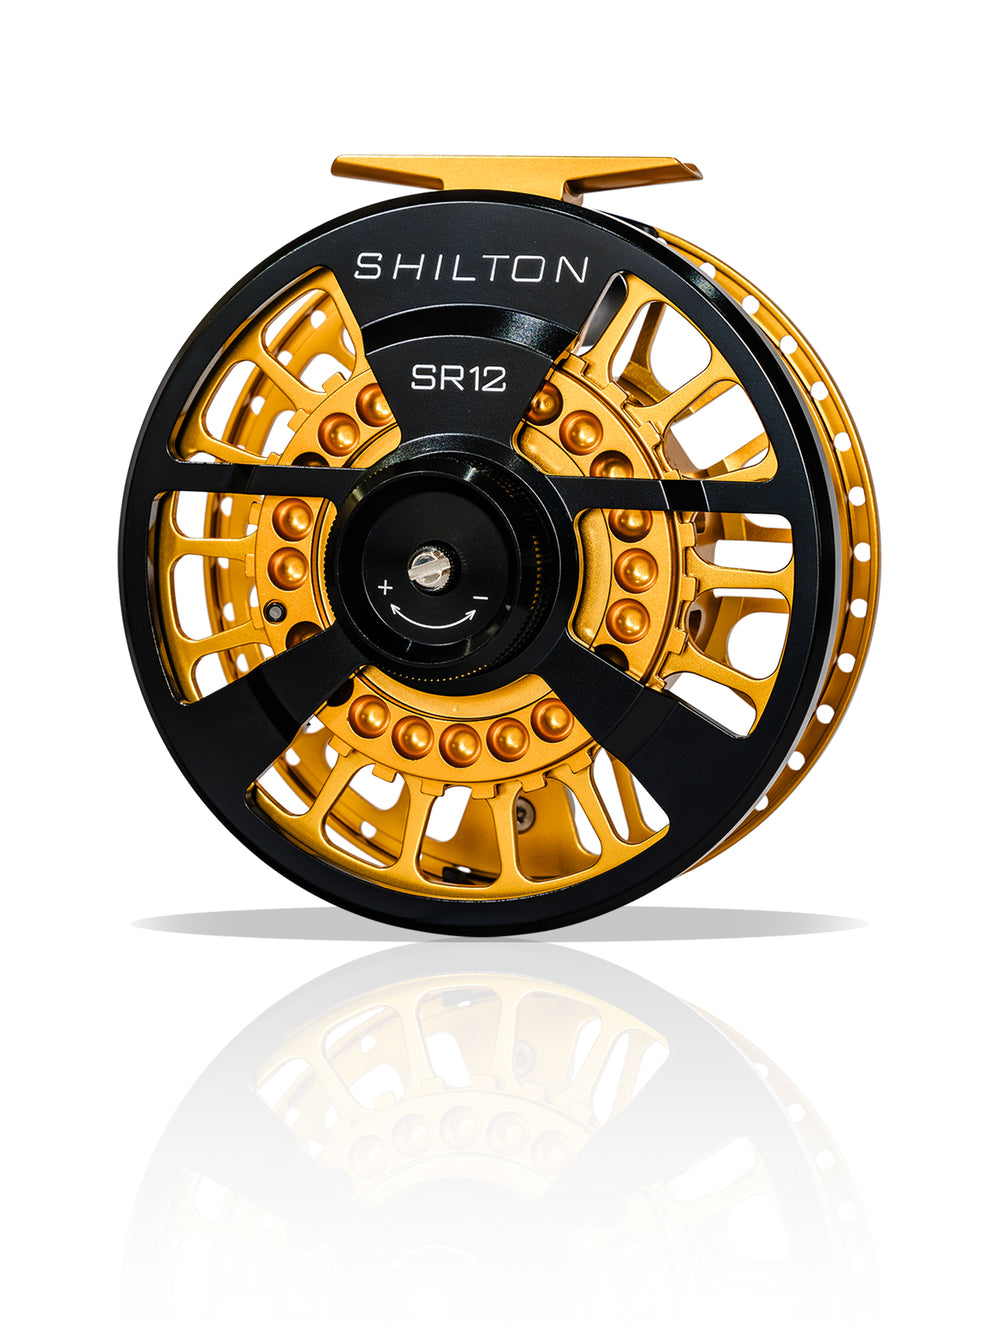 Shilton SR12 Reel (12wt+) in Black & Gold